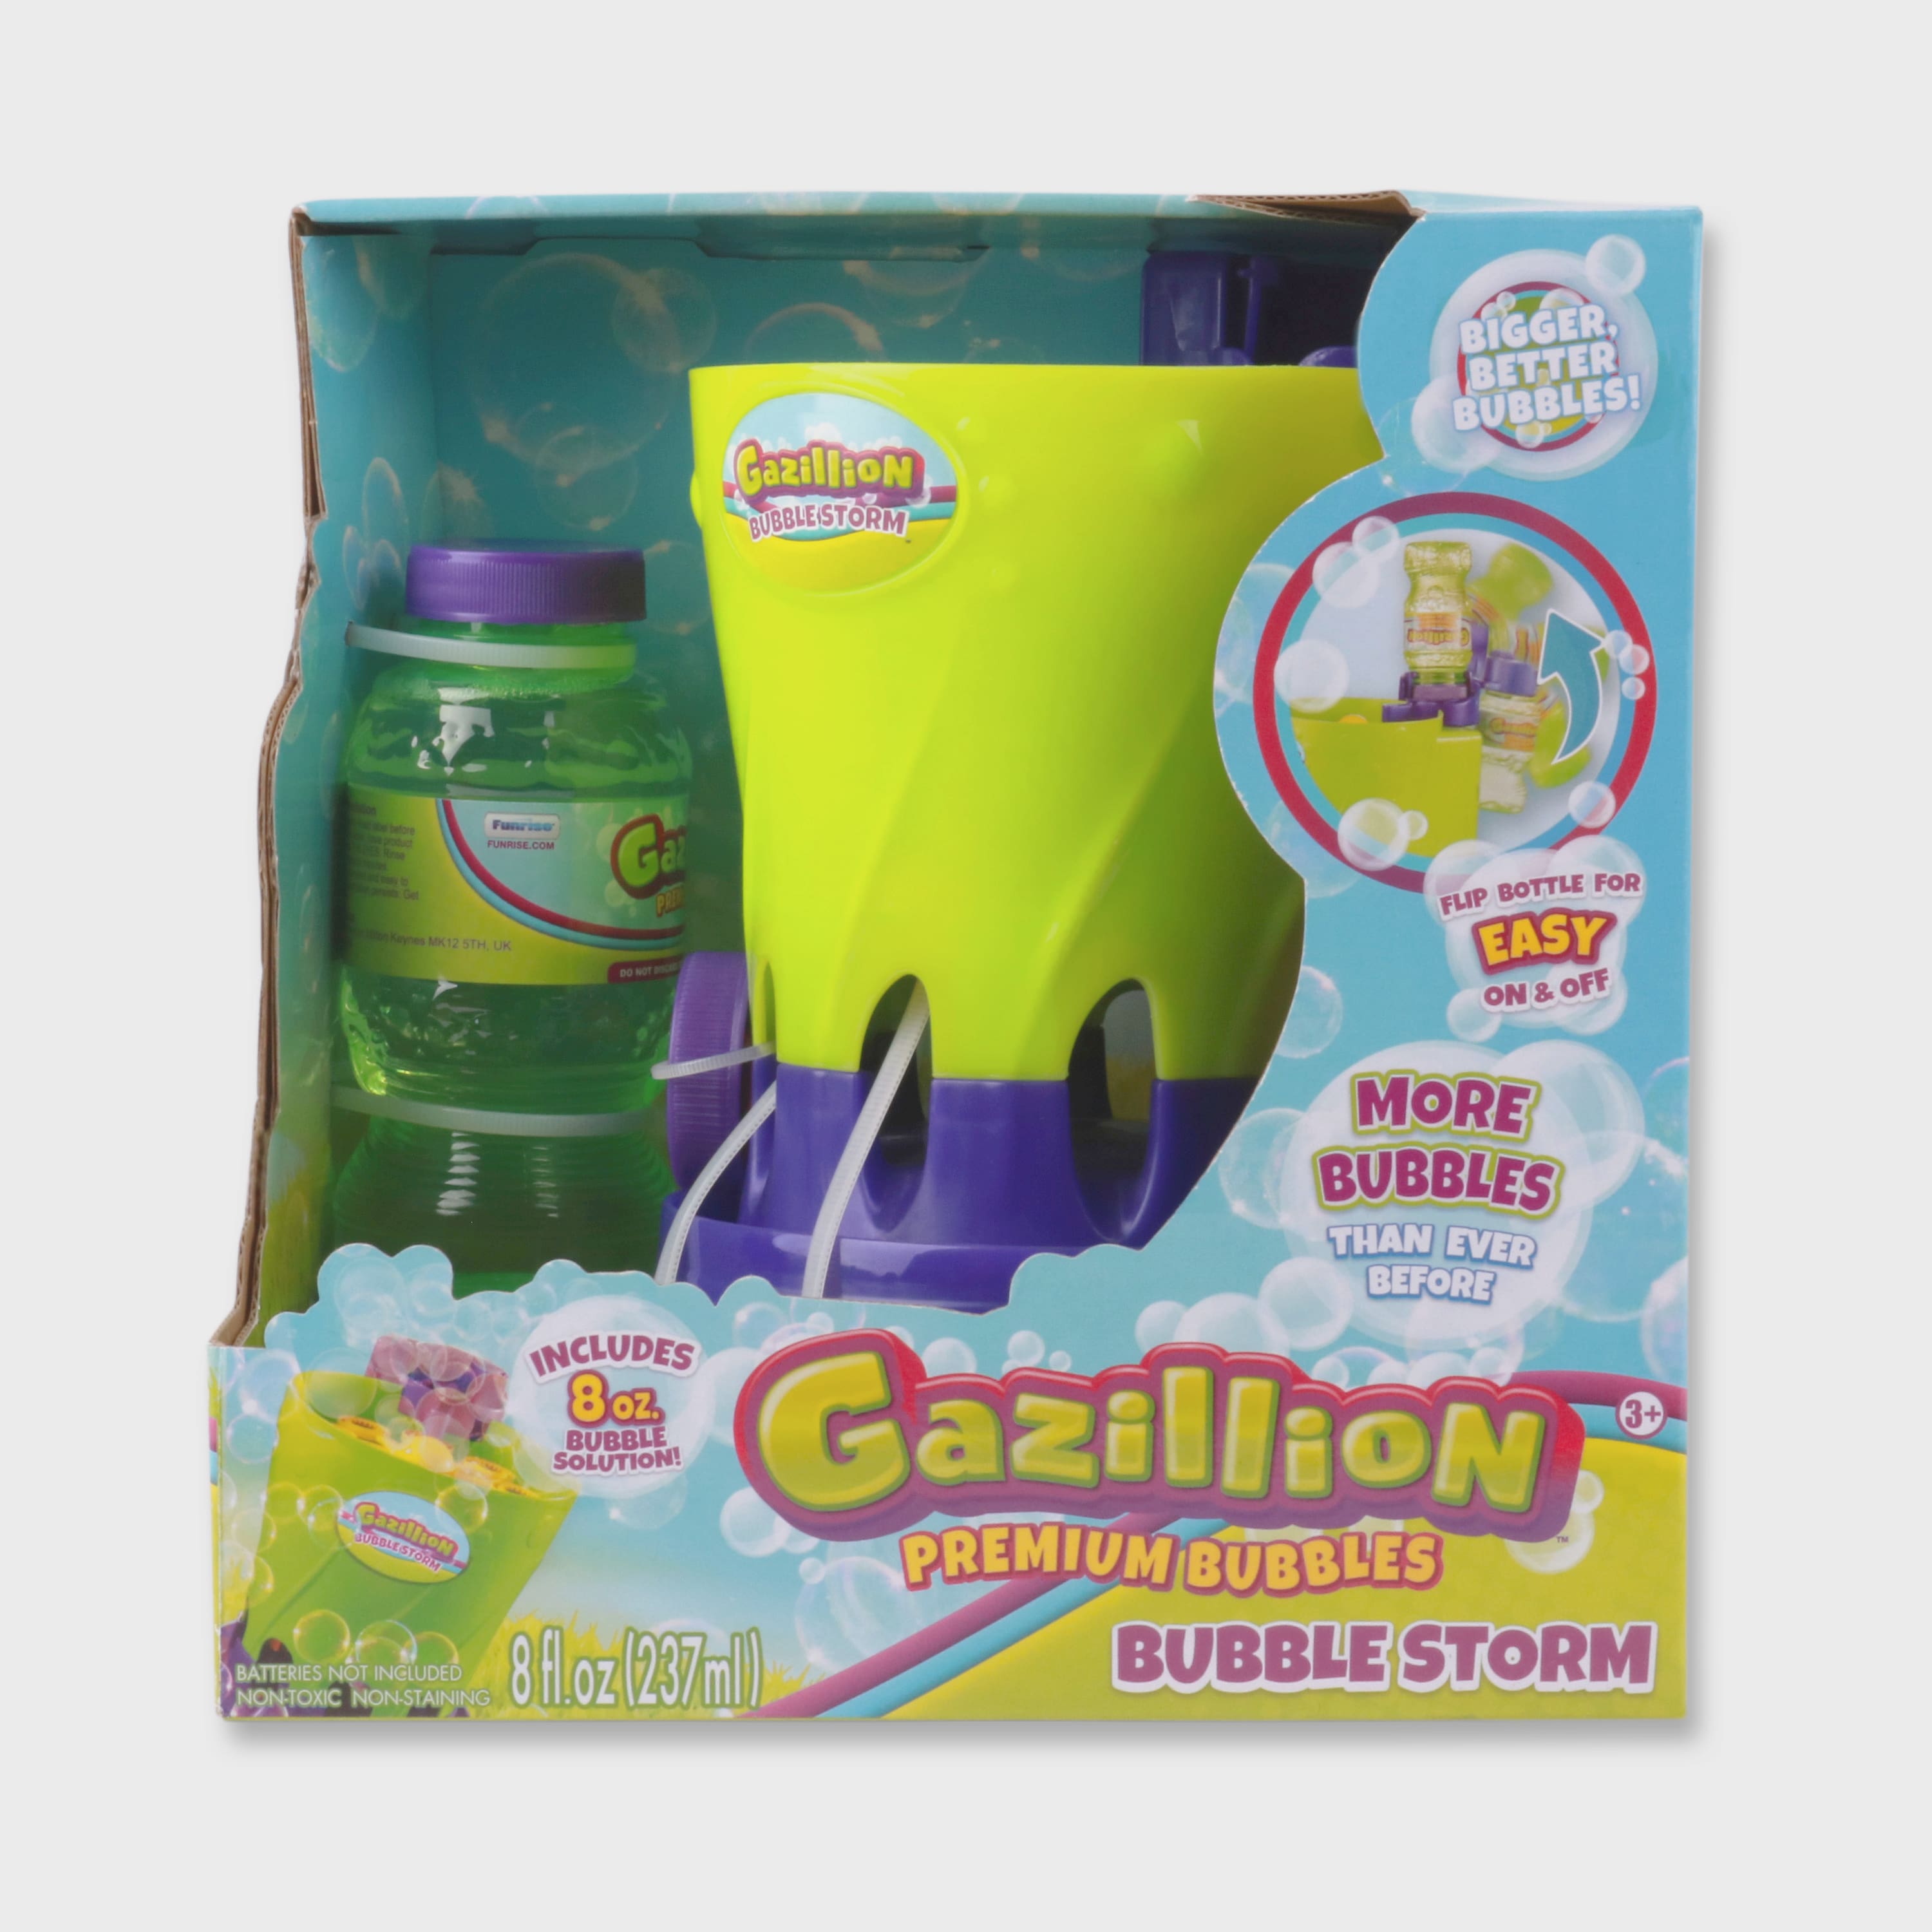 Gazillion Bubble Storm